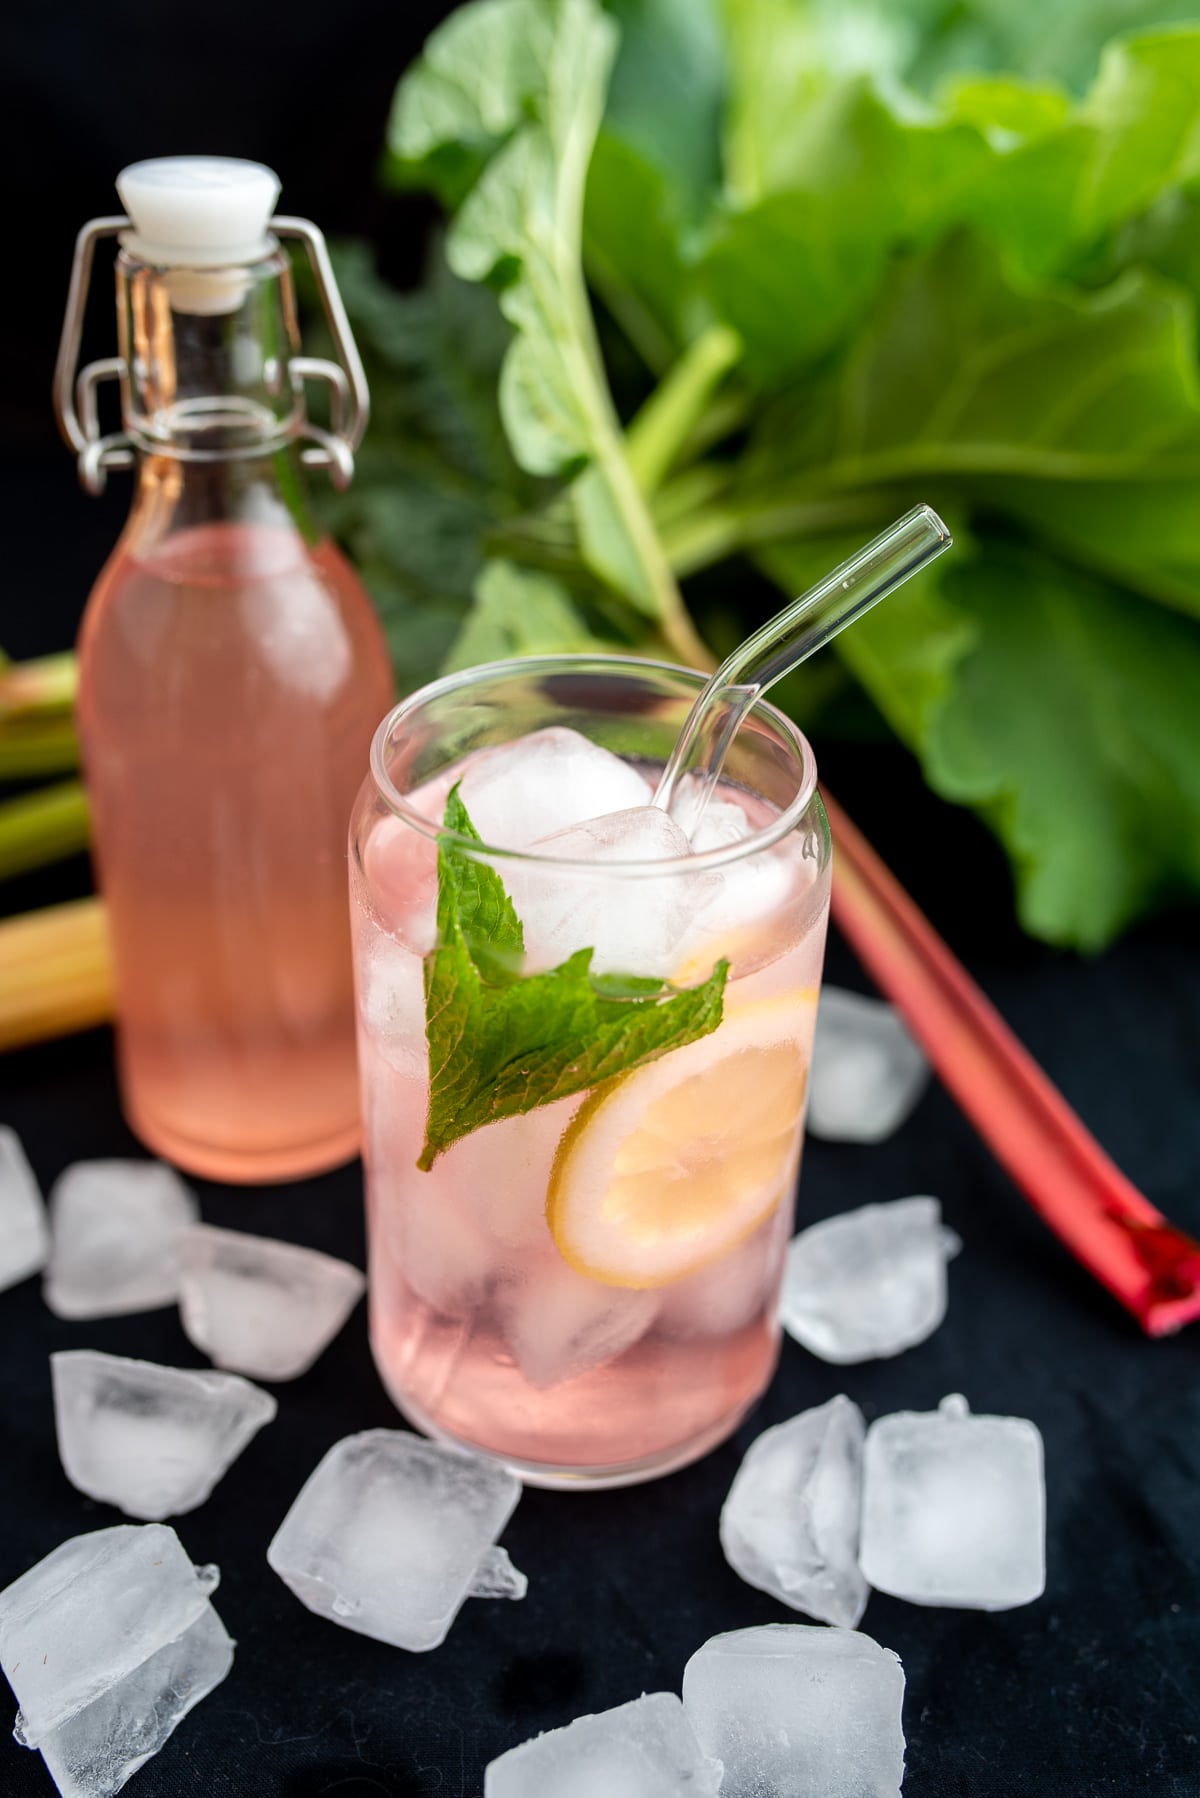 różowa lemoniad rabarbarowa w szklance pełnej lodu z cytryną i miętą w tle butelka z lemoniadą